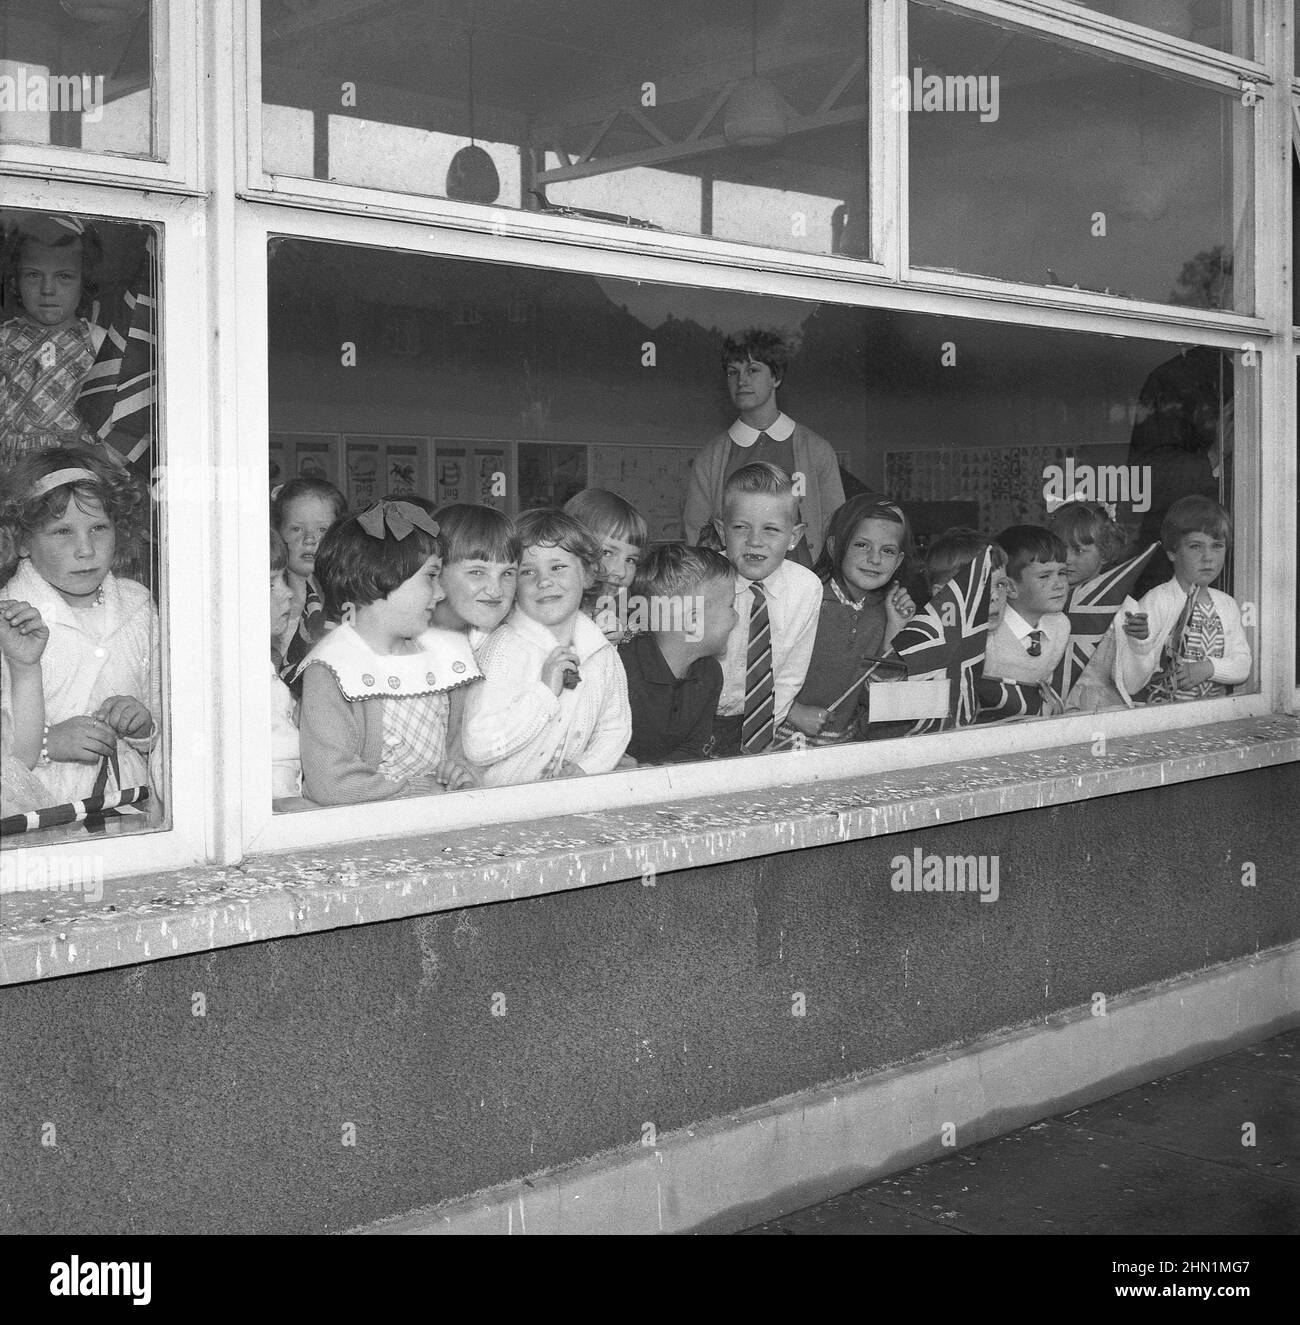 1965, des garçons et des filles de l'école primaire, historiques et excités, regardant par la fenêtre de leur salle de classe, certains avec des drapeaux Union Jack en main, Angleterre, Royaume-Uni. Banque D'Images